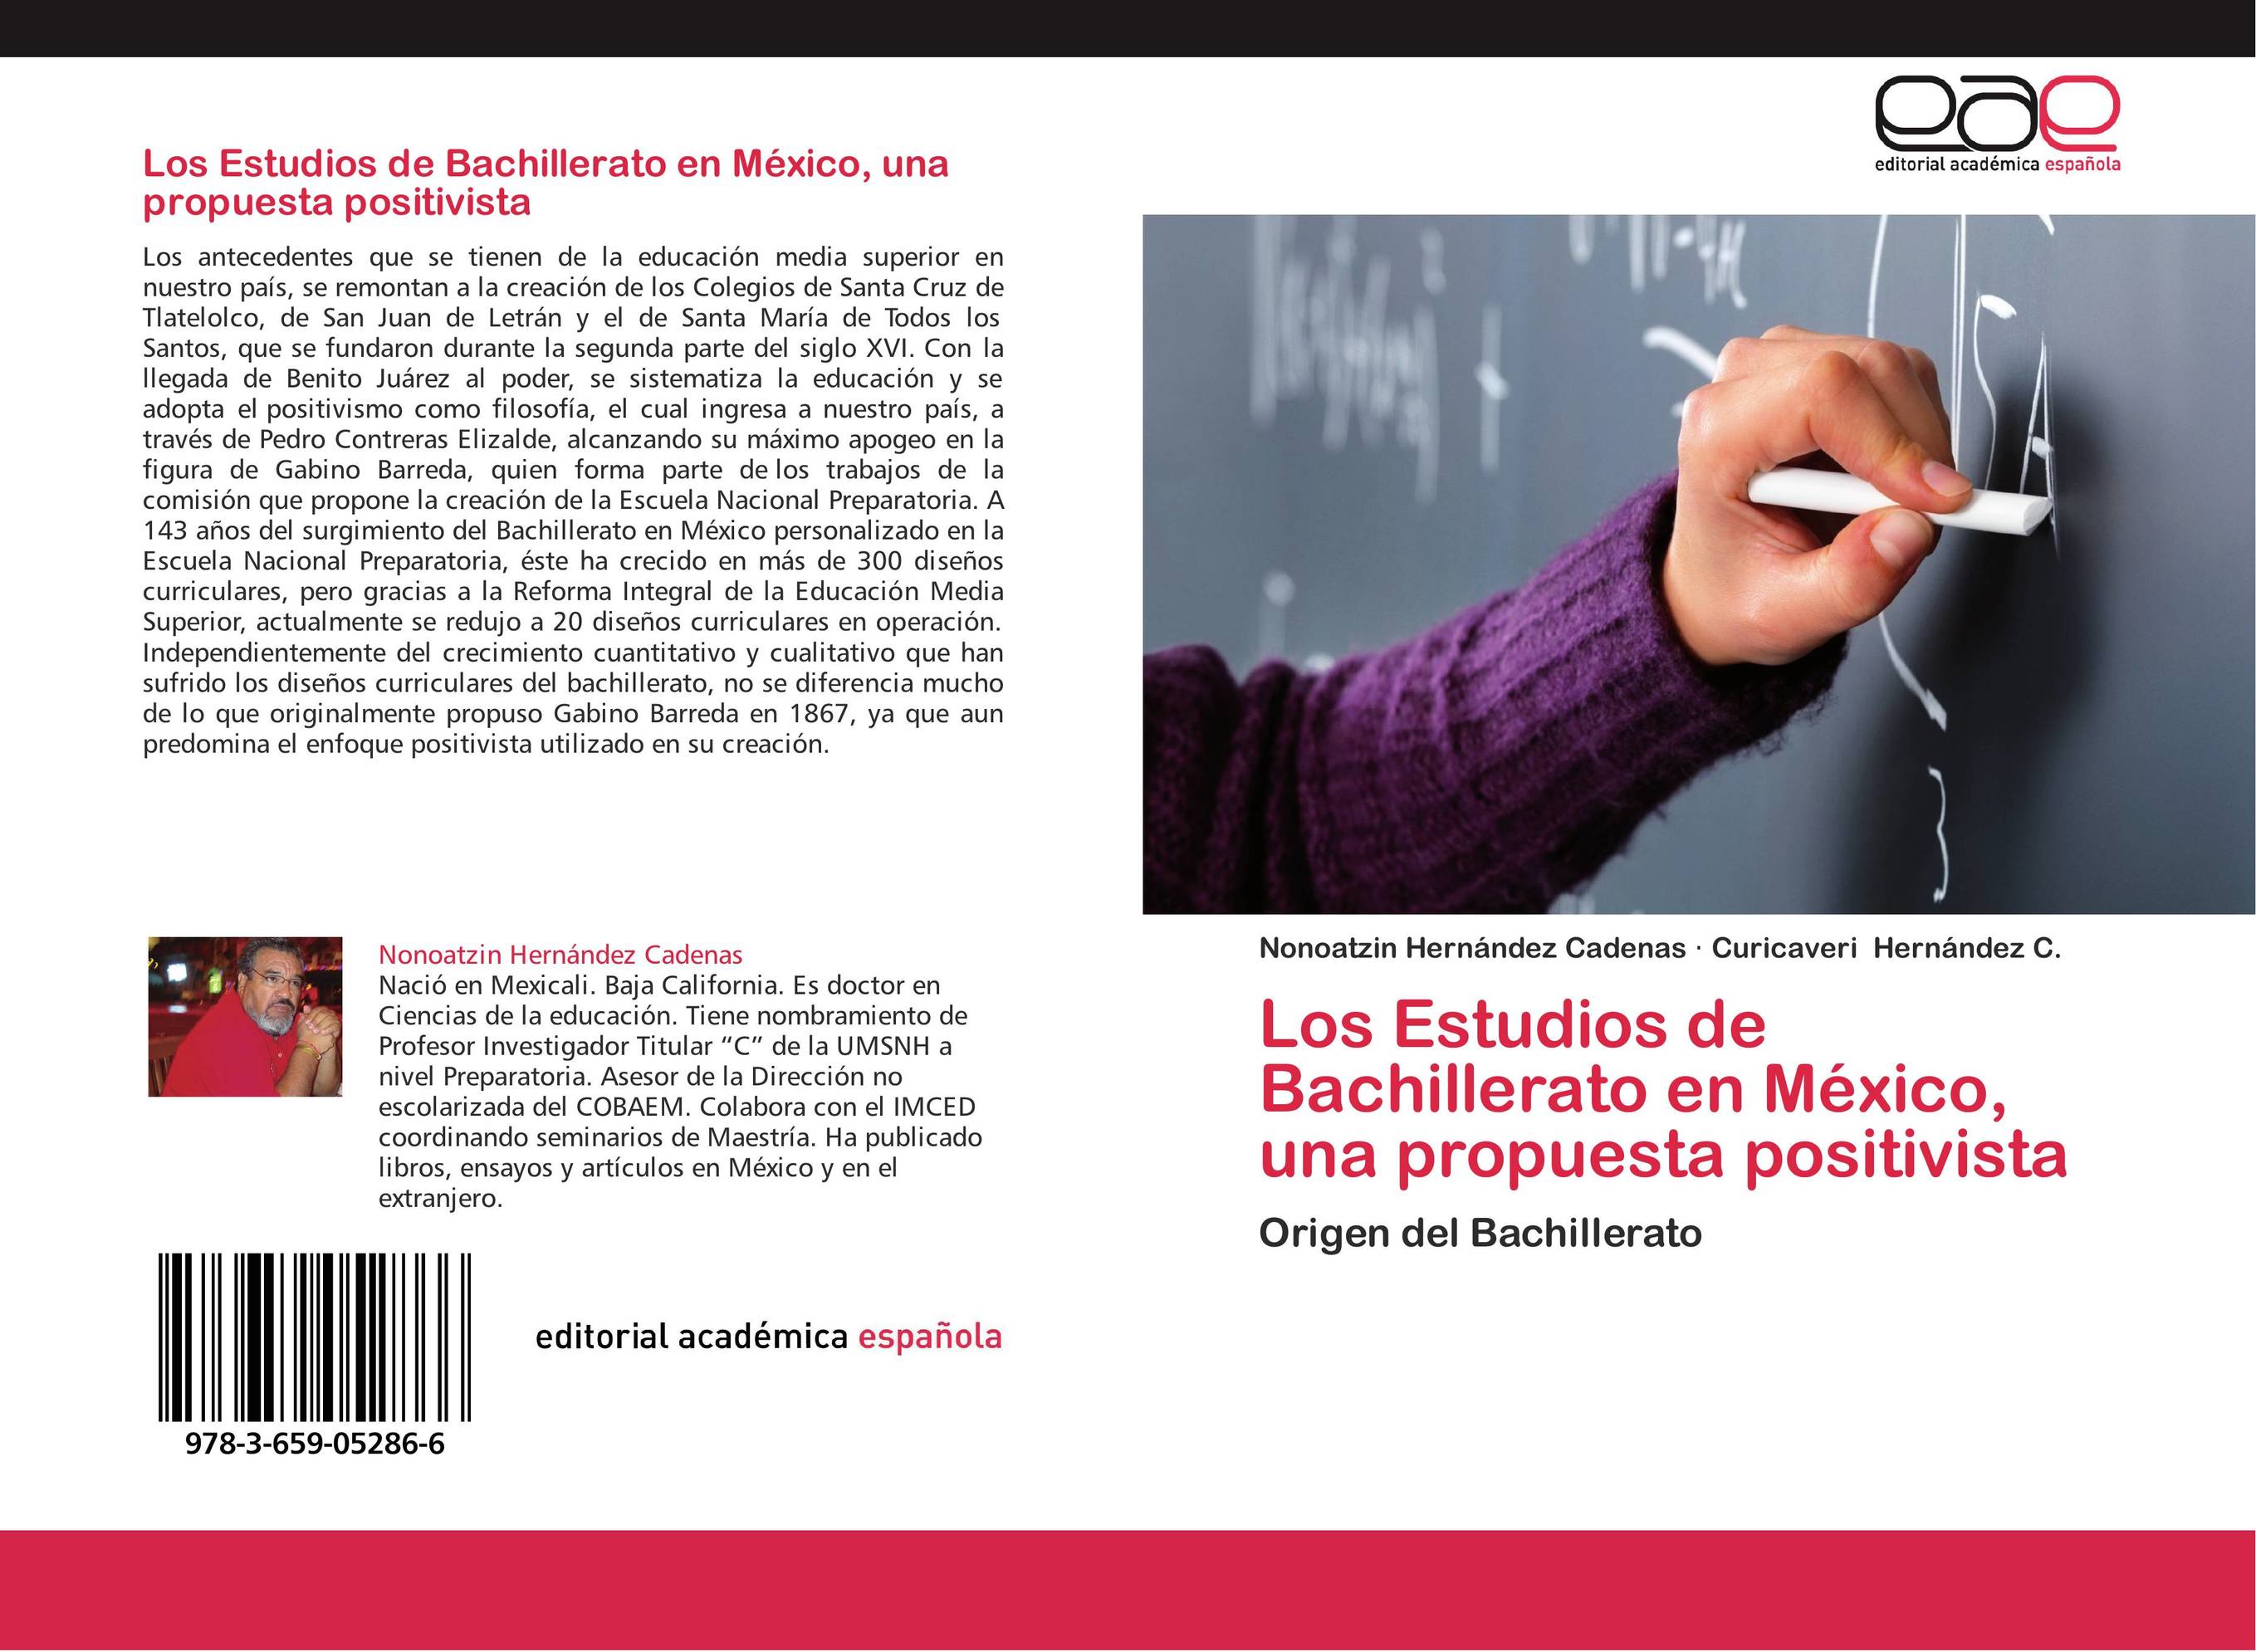 Los Estudios de Bachillerato en México, una propuesta positivista